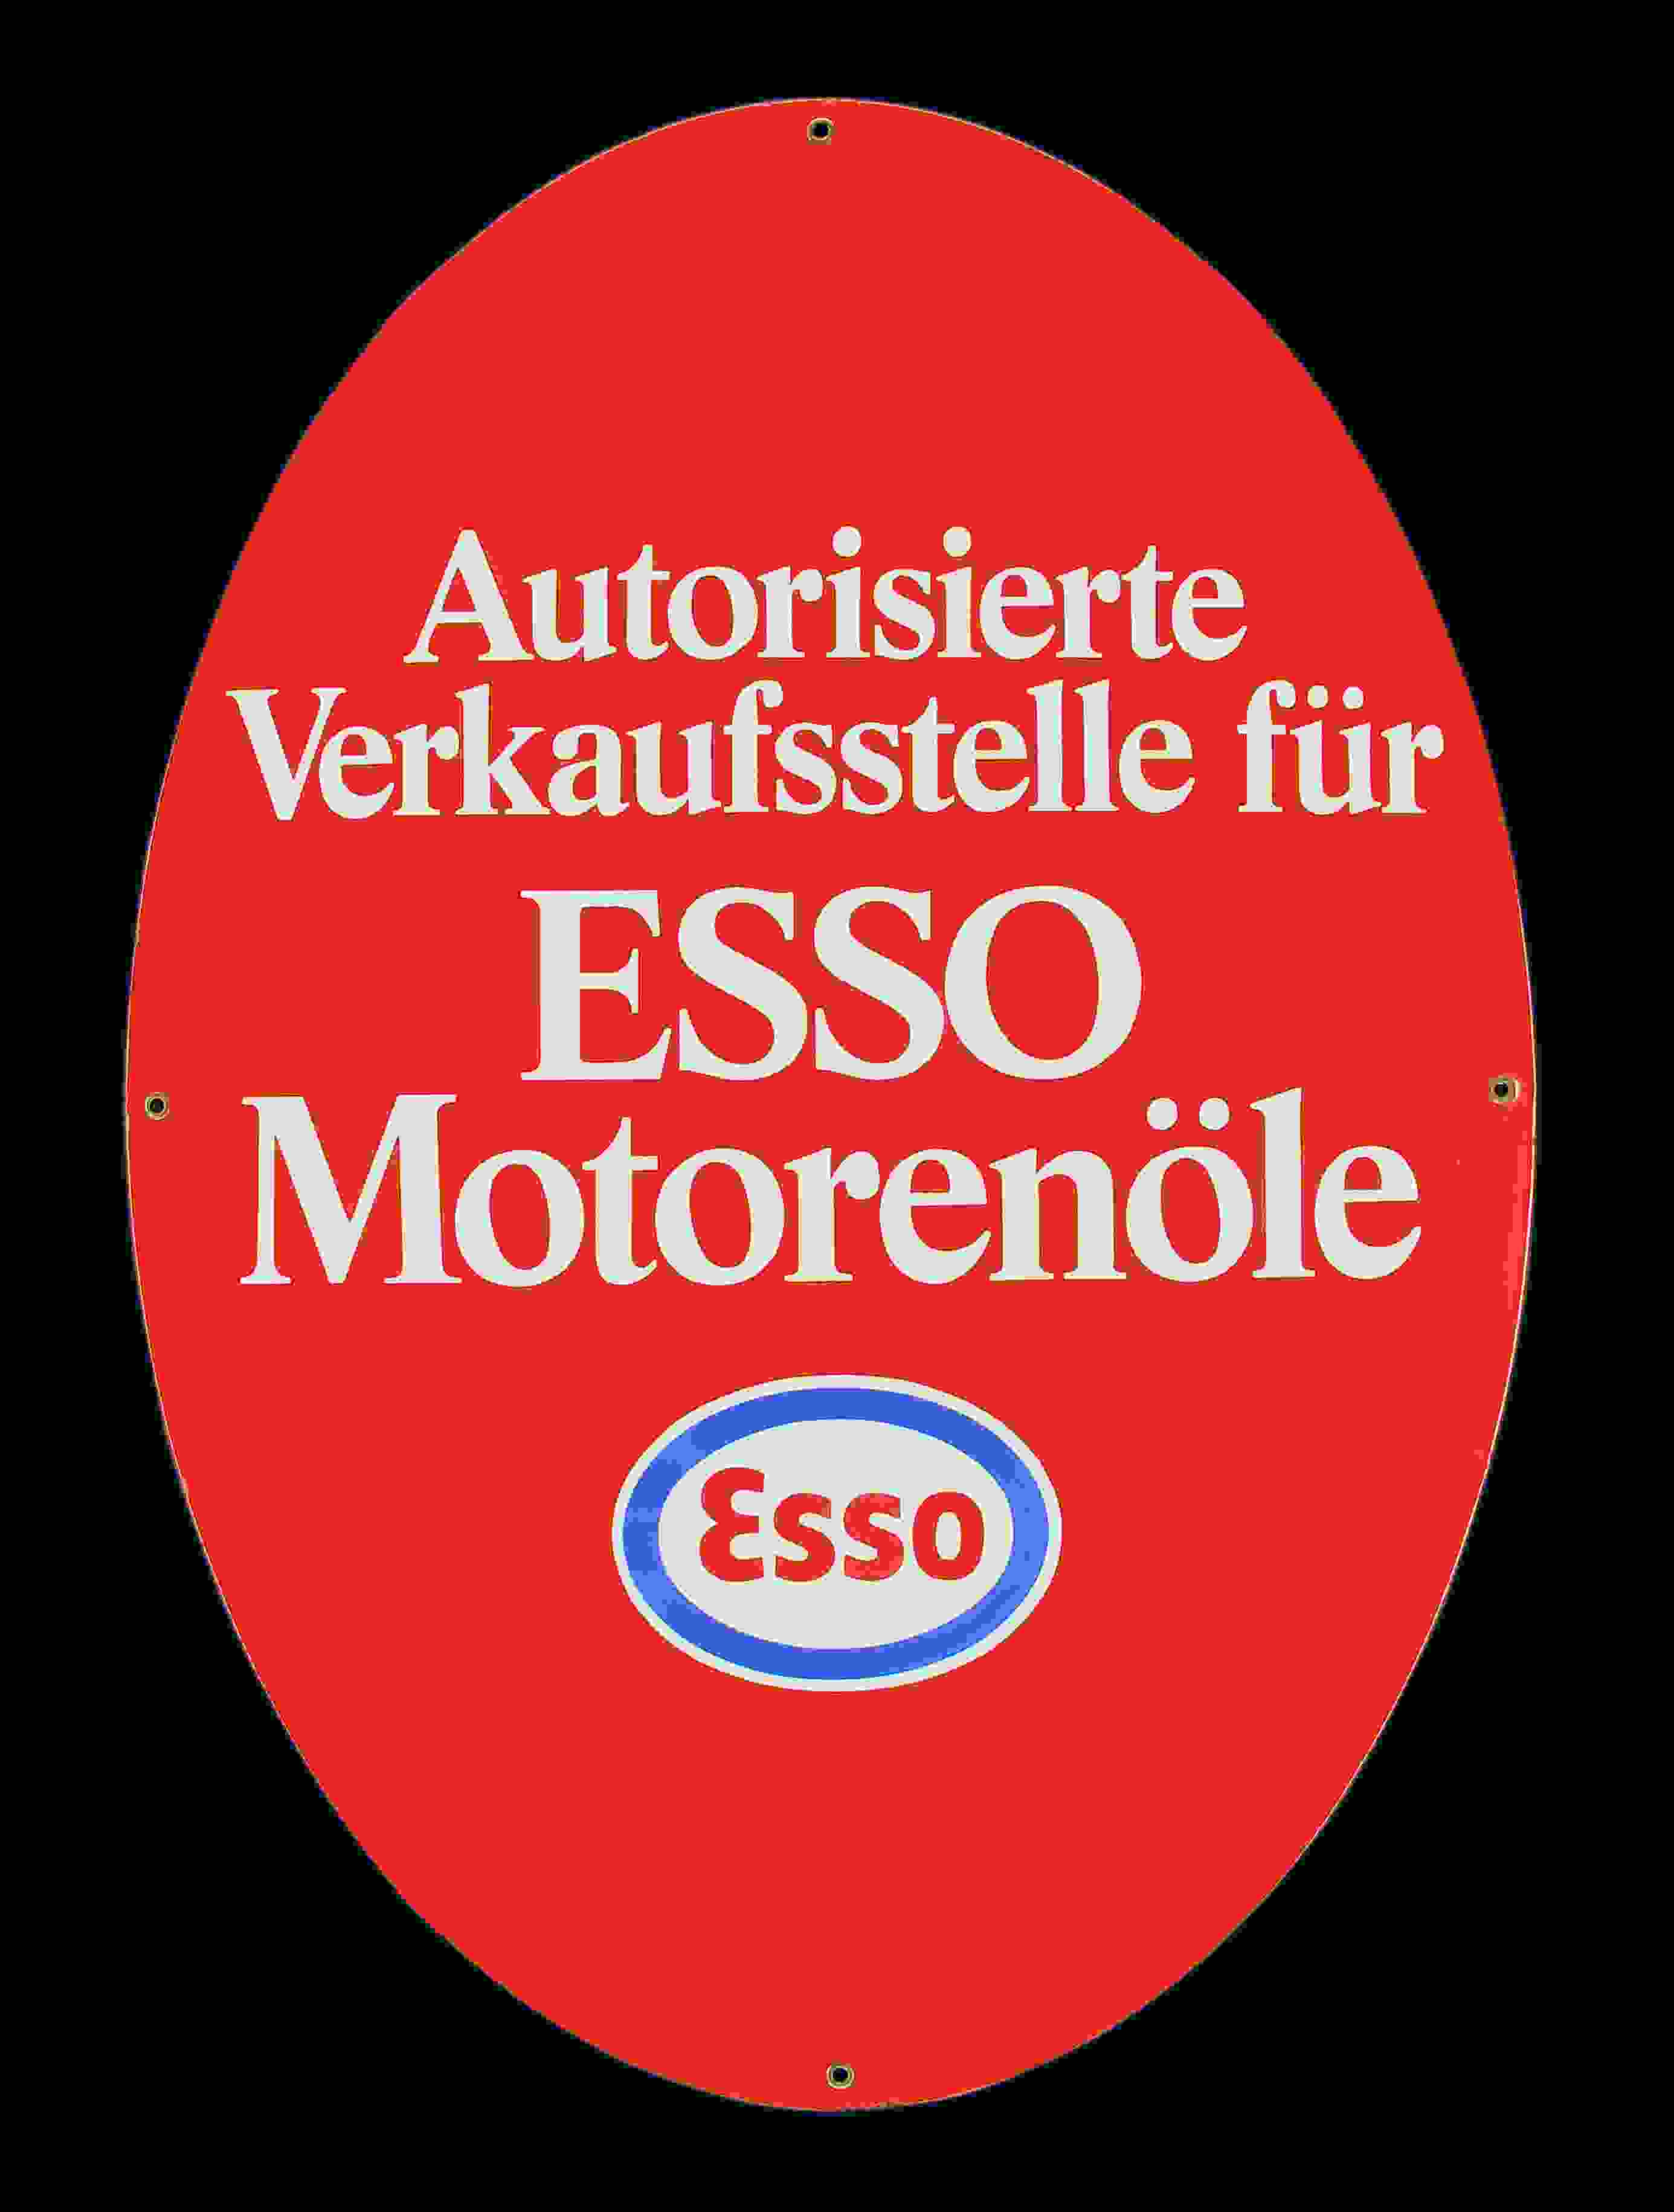 Esso Motorenöle Verkaufstelle 